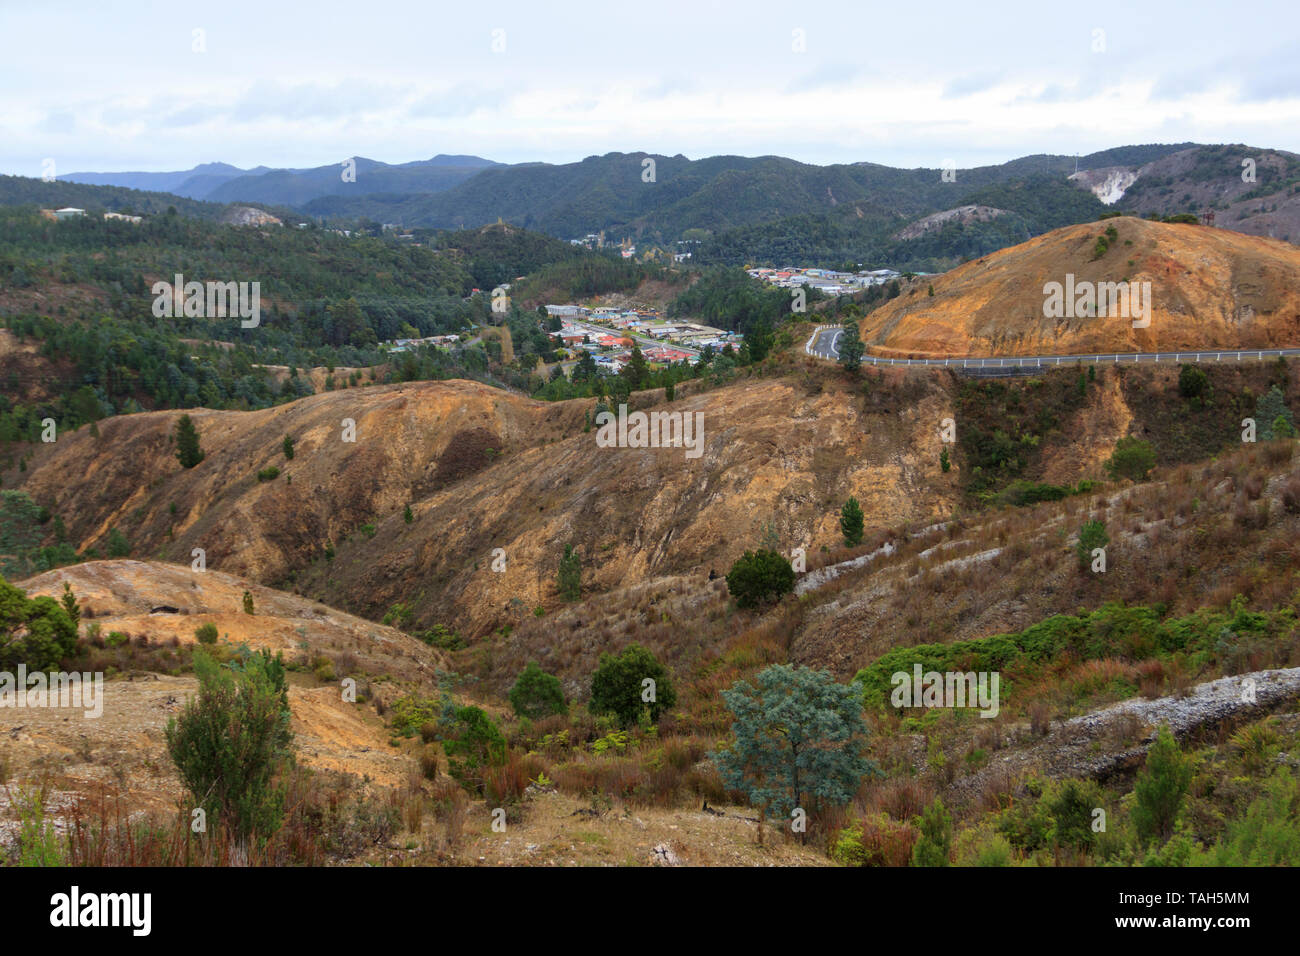 Les collines autour de Queenstown en Tasmanie à la roche jaune à partir de l'abattage d'arbres et les fumées provenant des fours avec végétalisation Banque D'Images